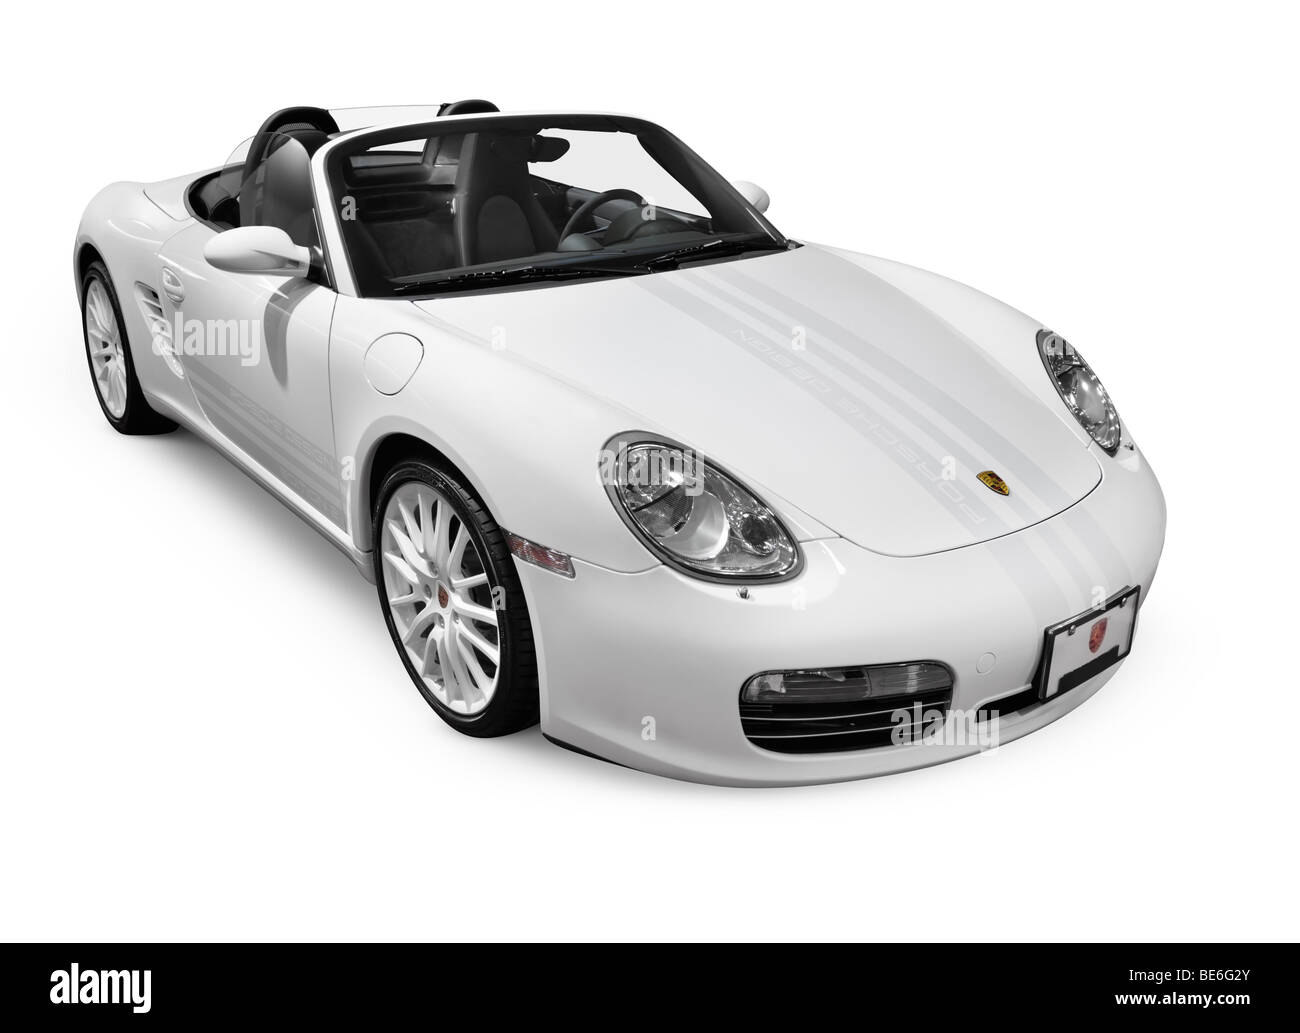 Lizenz und Drucke bei MaximImages.com - Porsche Luxus-Sportwagen, Supersportwagen, Automobil Stock Foto. Stockfoto